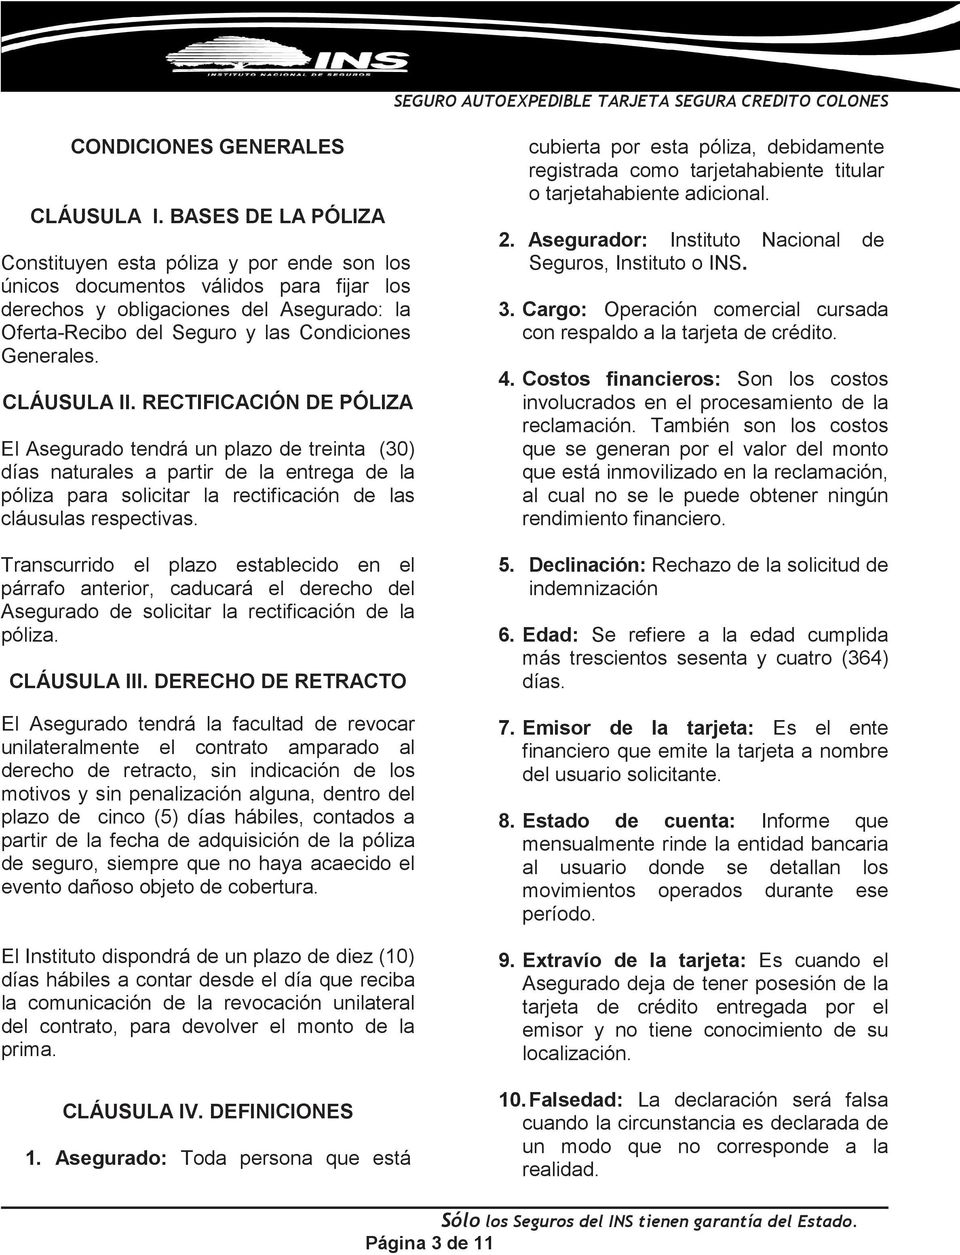 CLÁUSULA II. RECTIFICACIÓN DE PÓLIZA El Asegurado tendrá un plazo de treinta (30) días naturales a partir de la entrega de la póliza para solicitar la rectificación de las cláusulas respectivas.